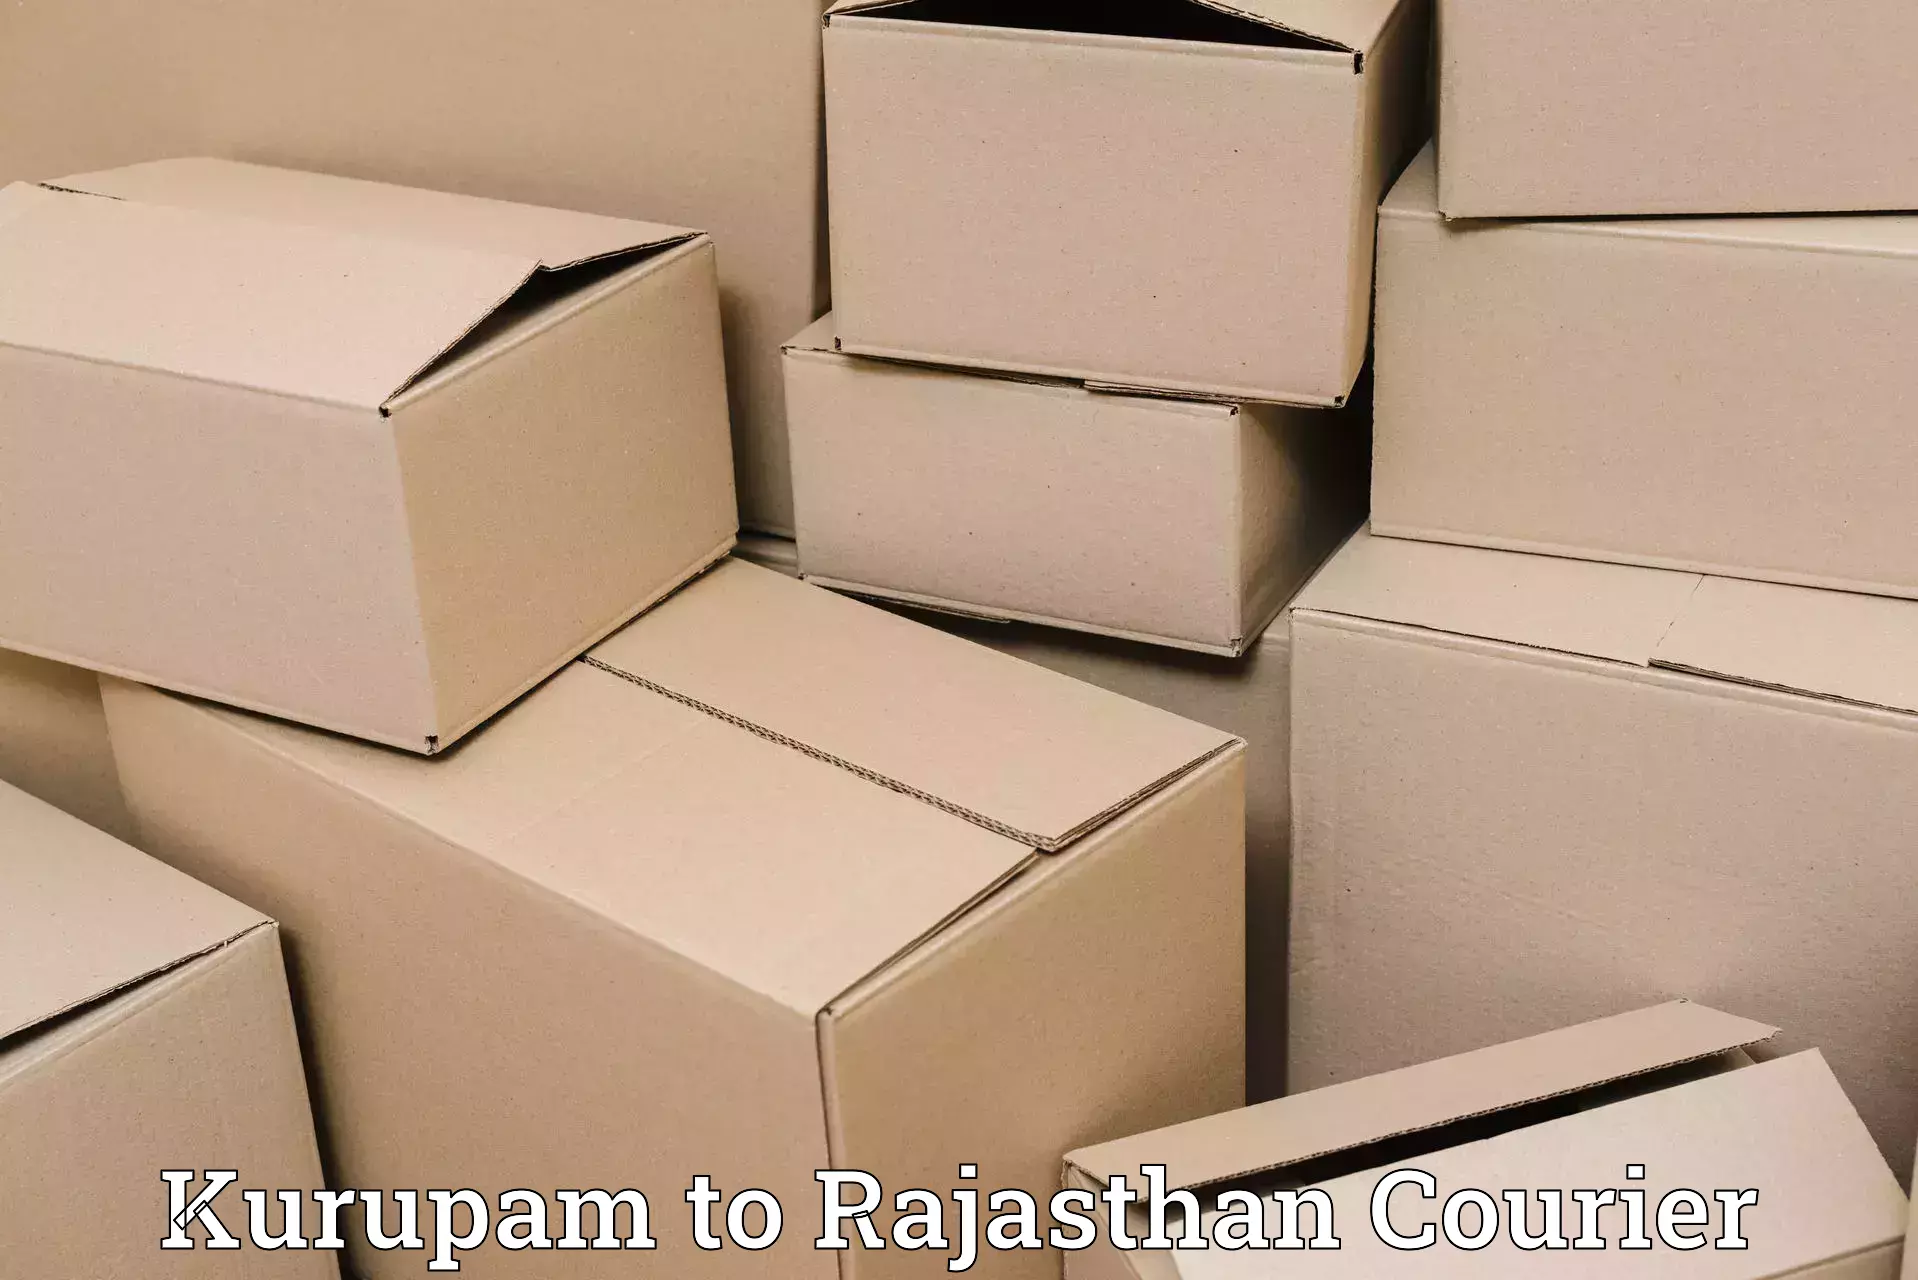 High-speed parcel service Kurupam to Weir